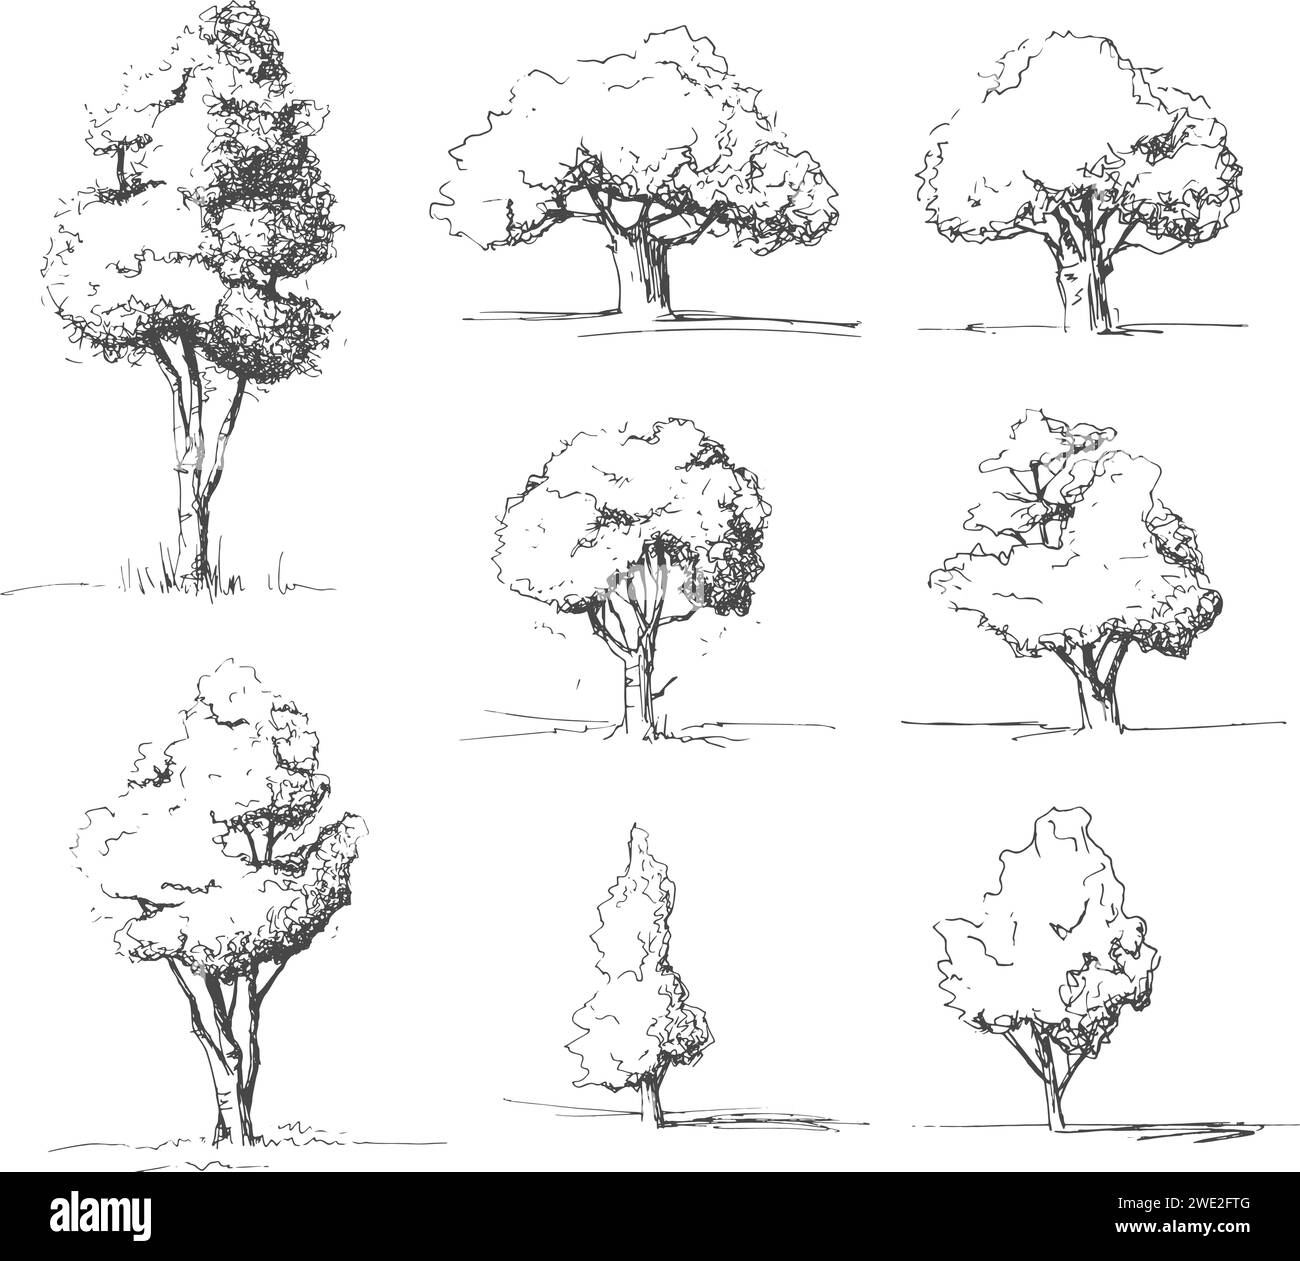 Strukturskizzen, Zeichnungen. Naturschauspiele, Waldbilder Stock Vektor